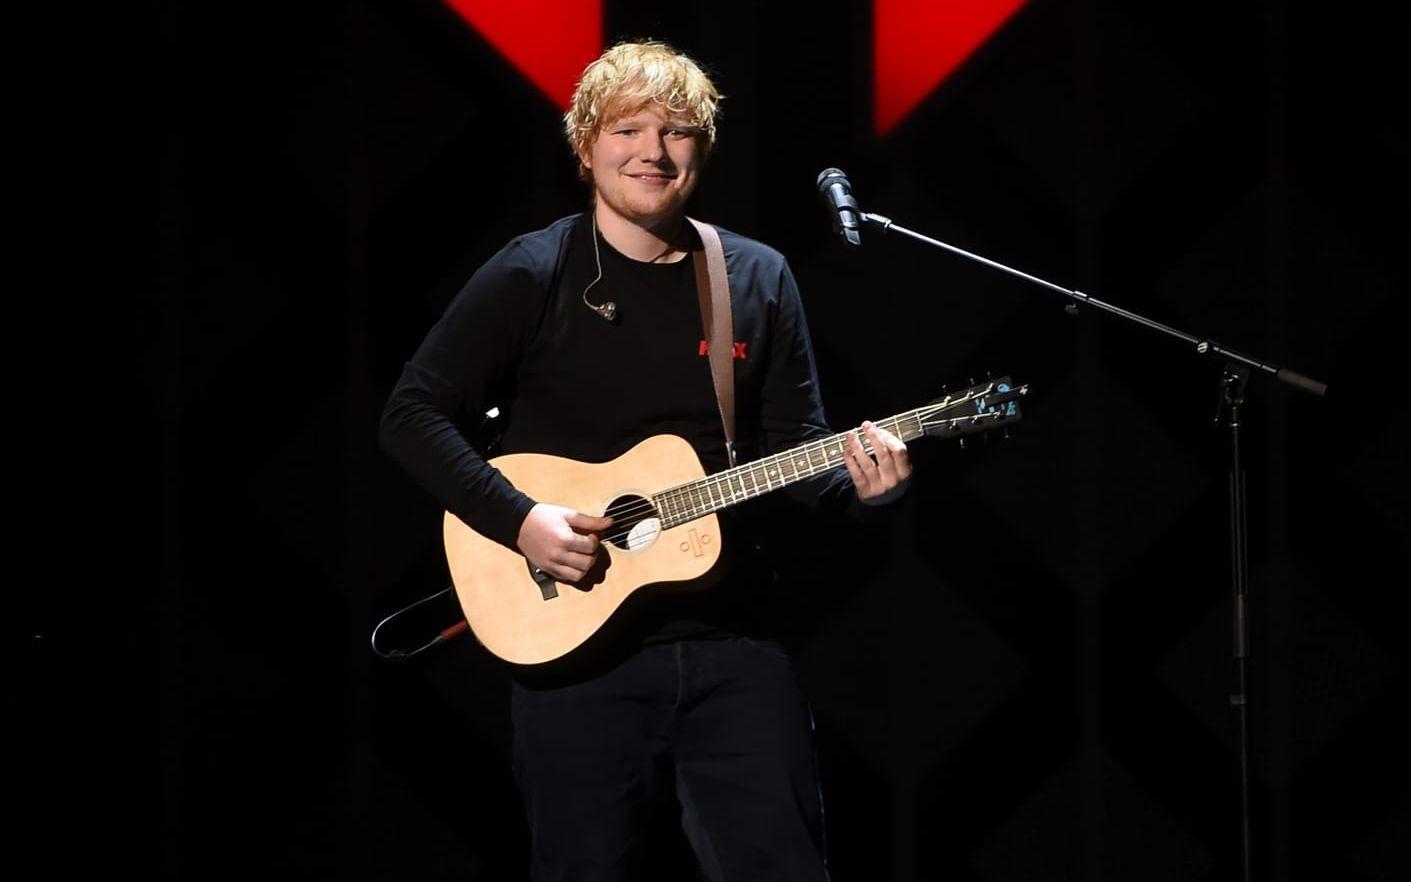 Ed Sheeran vinner både mest spelade låt och artist 2017.